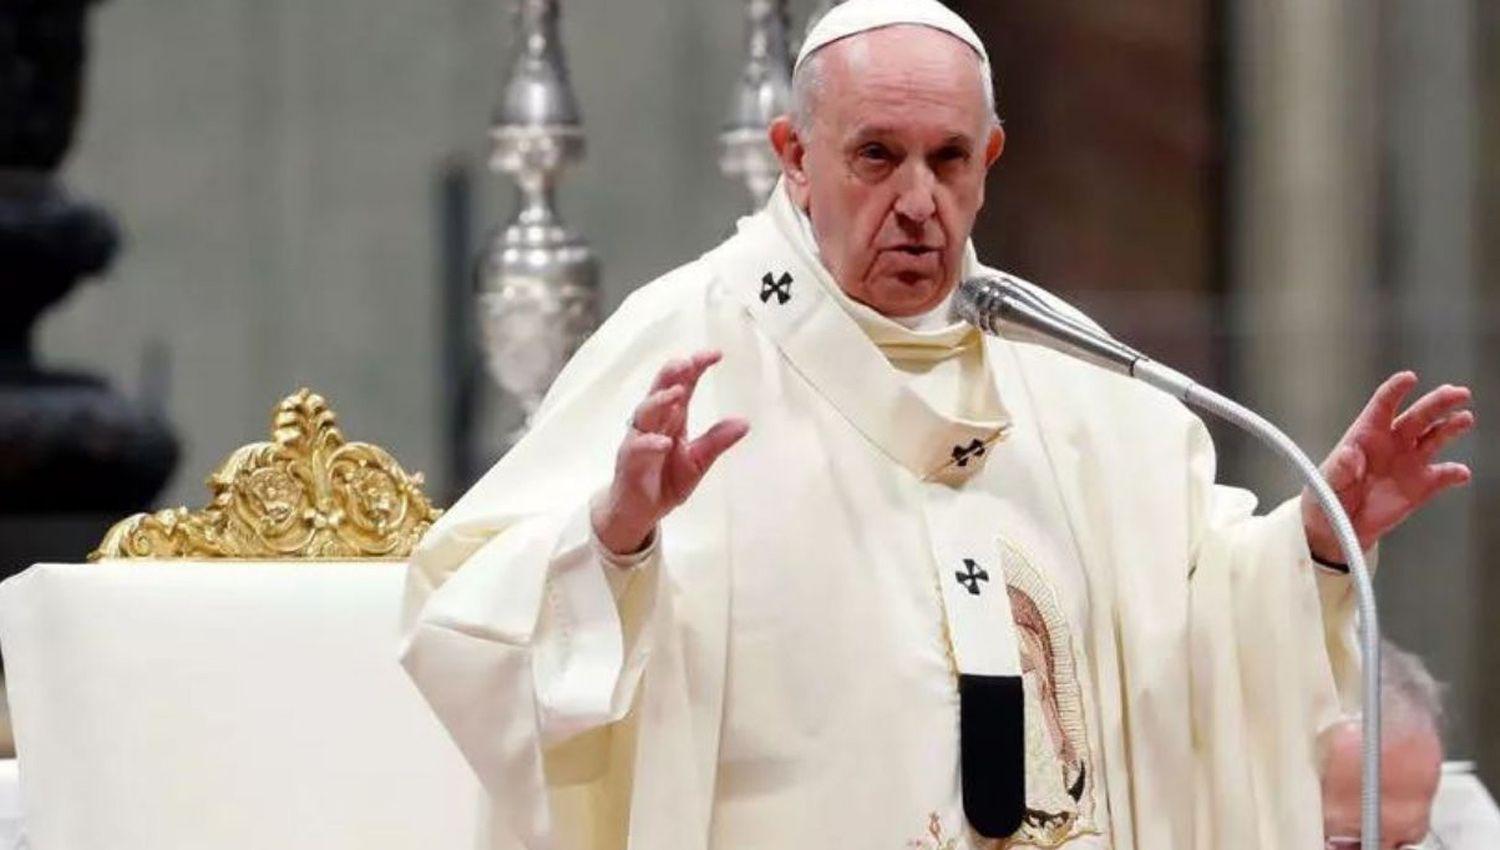 El Papa advierte sobre un genocidio viroacutesico si se prioriza a la economiacutea sobre la vida